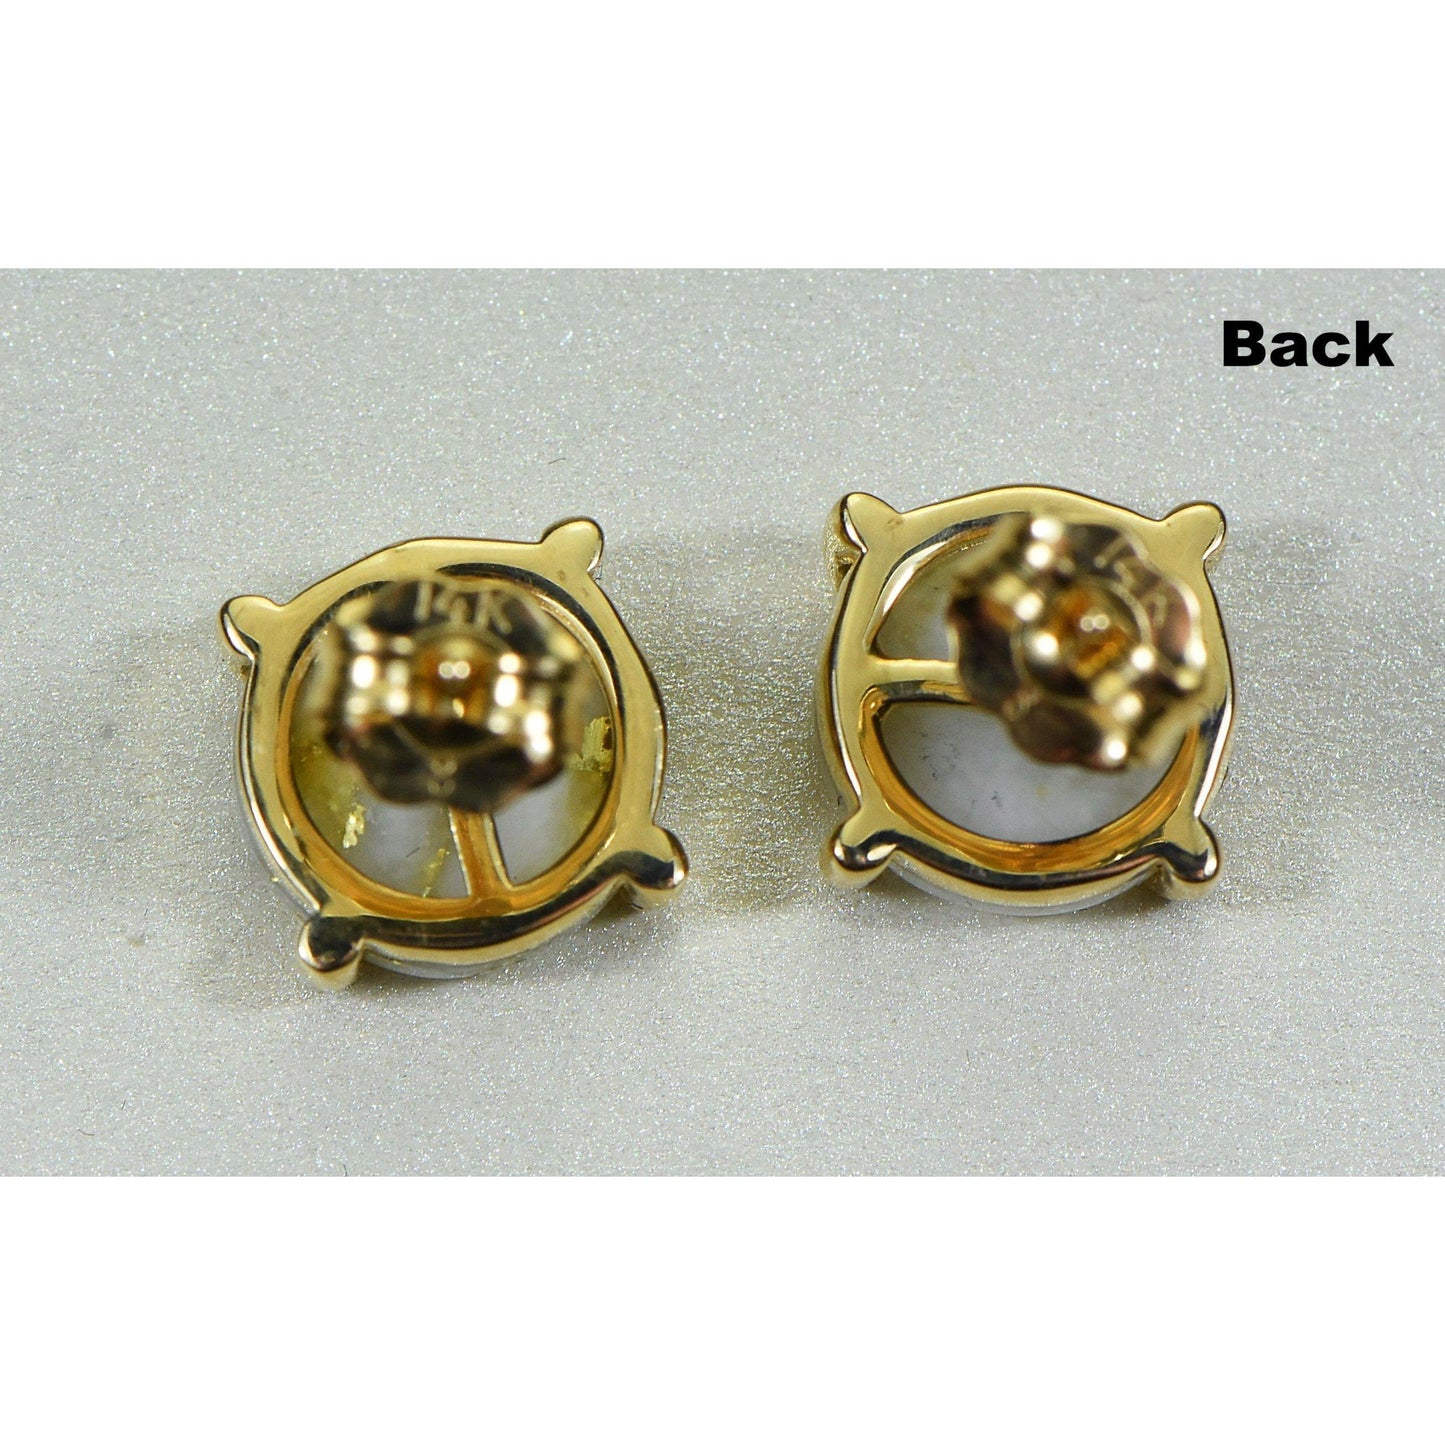 Orocal Gold Quartz Earrings Post Backs E8MMQ-Destination Gold Detectors